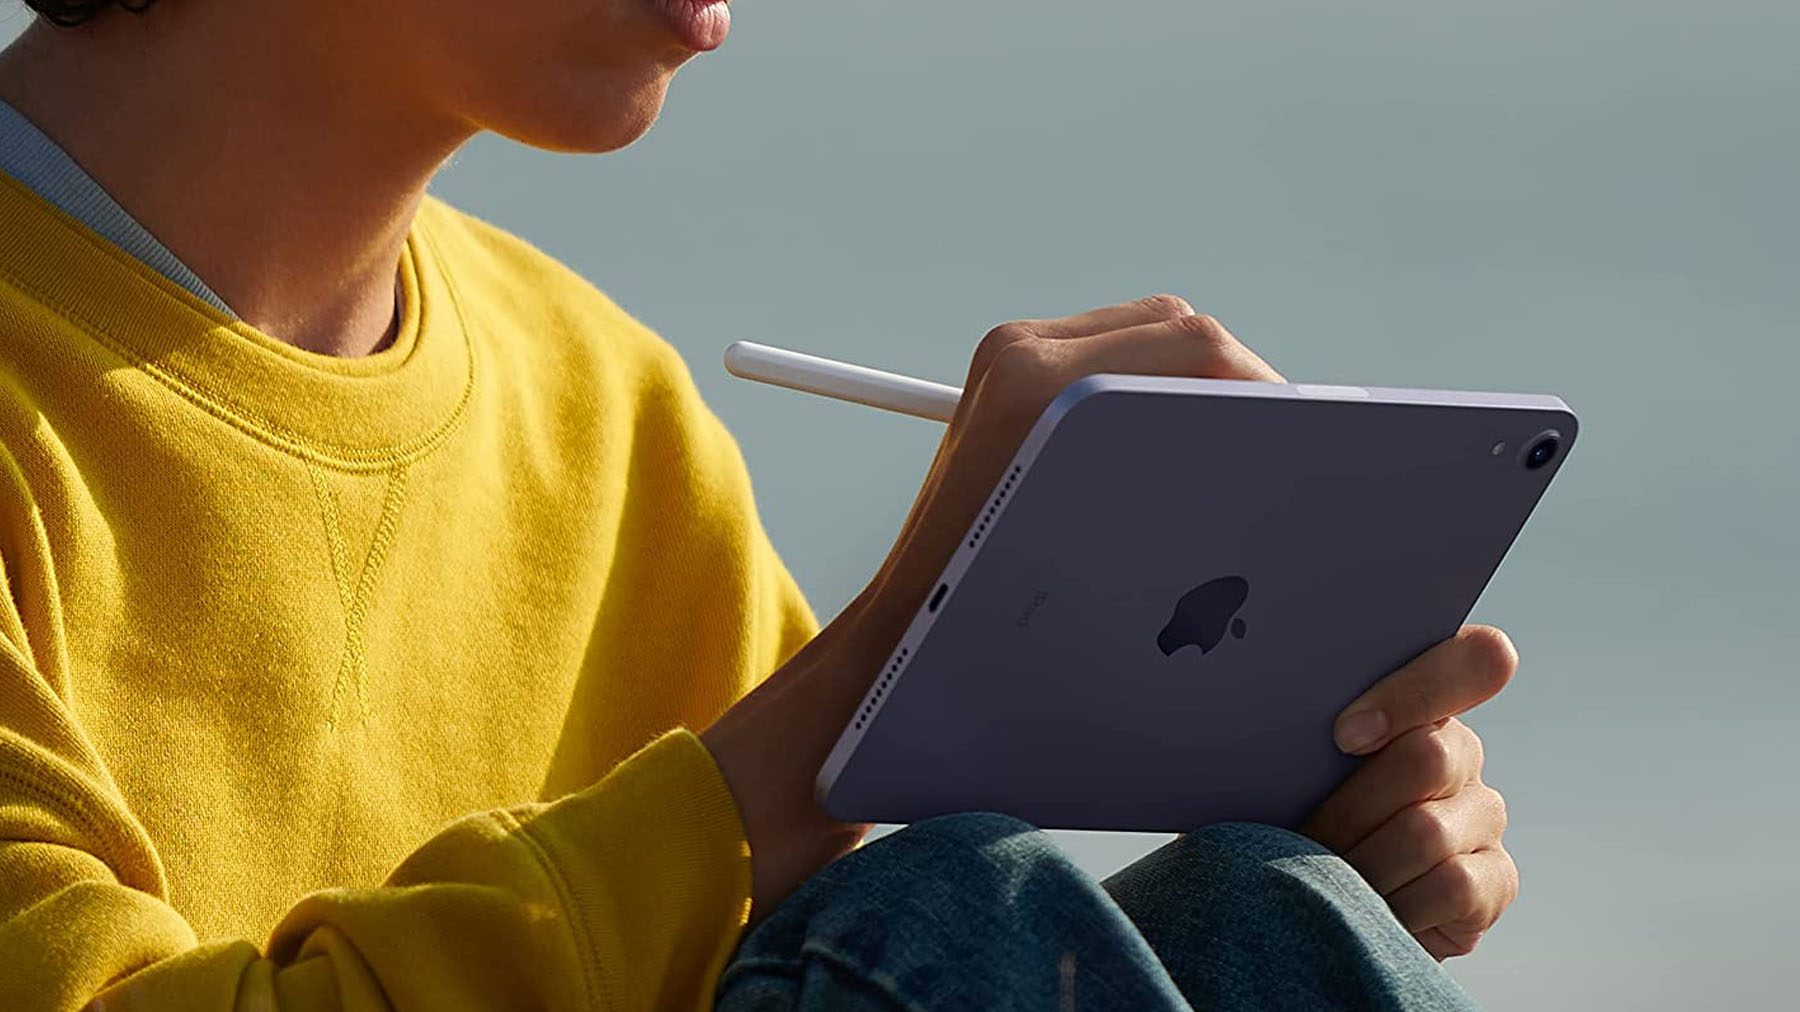 Eine Aufnahme einer Person, die auf einem iPad Mini sitzt und dabei einen Apple Pencil verwendet